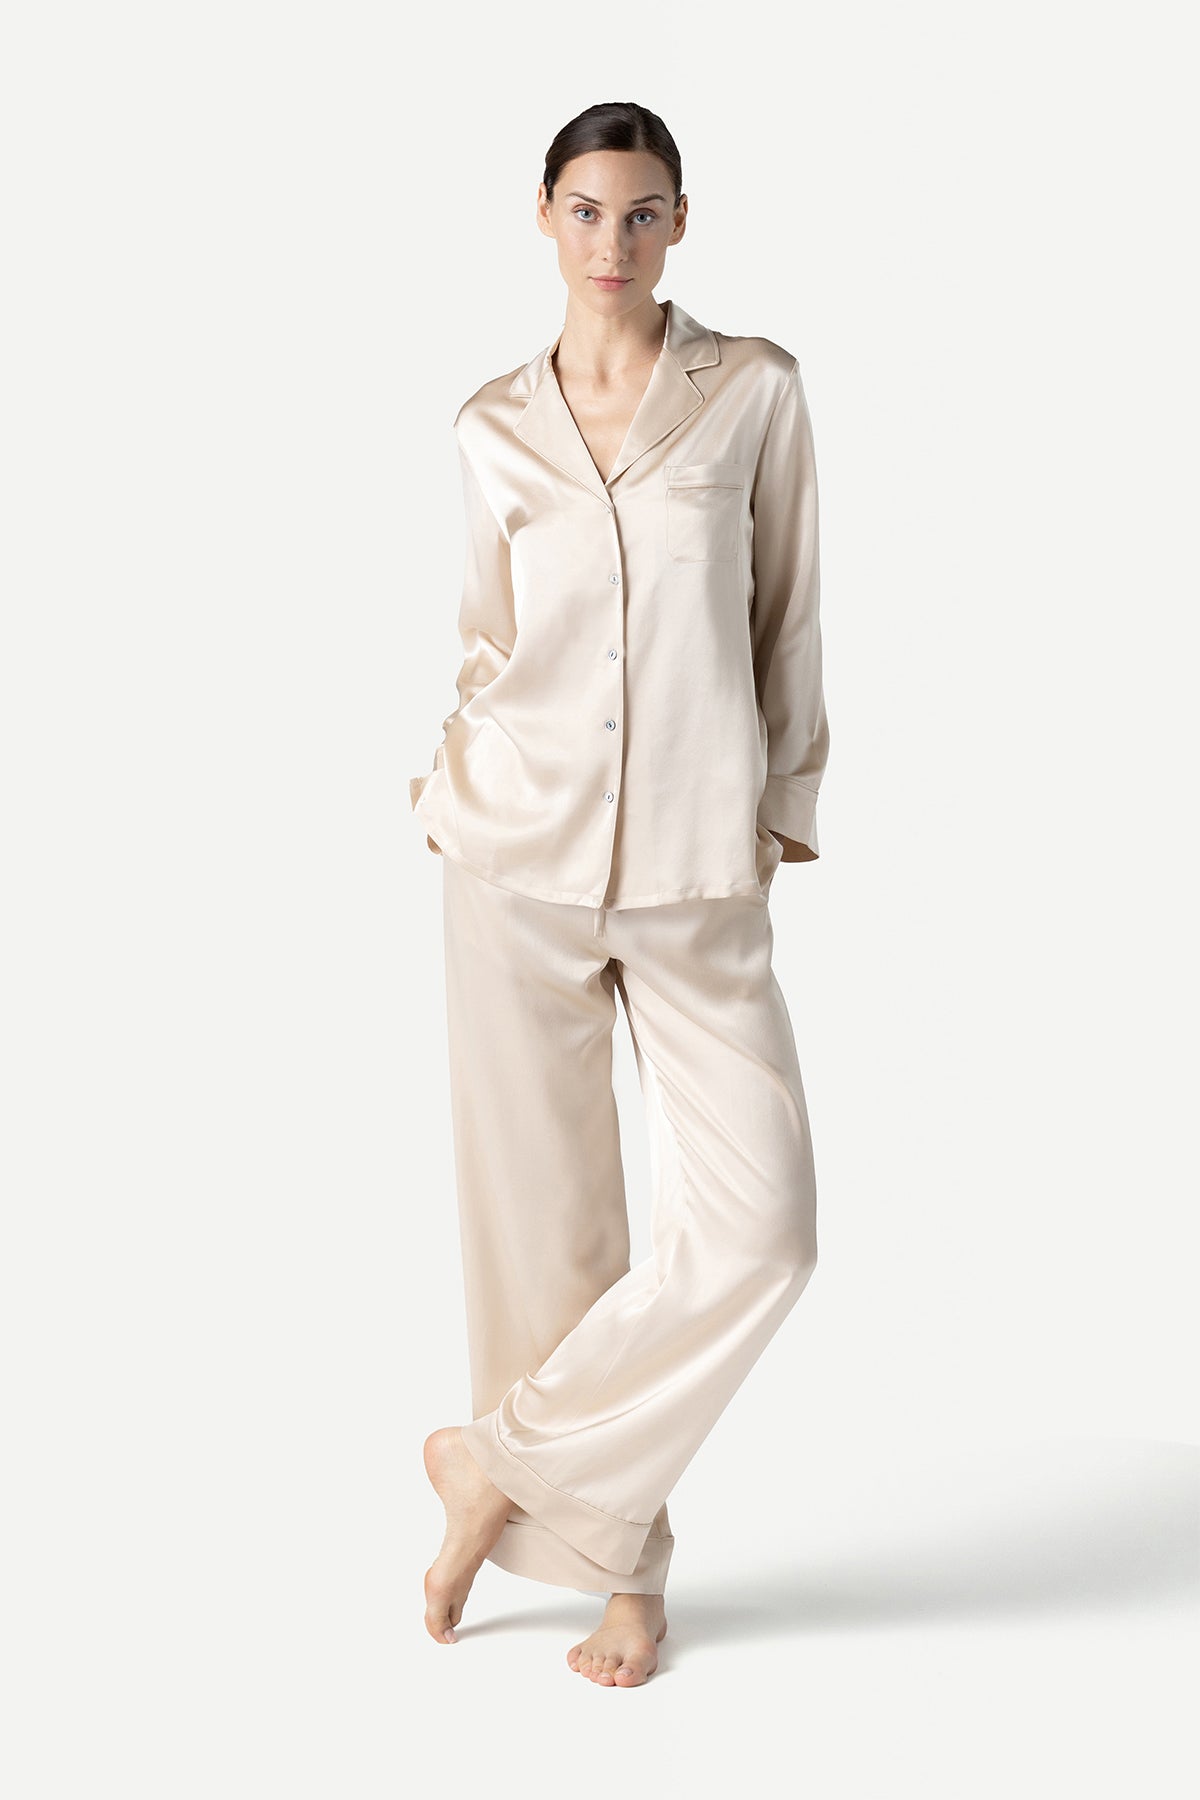 KNOKR Women's Pajama Sets， Women's Padded Warm Soft Pajamas Set